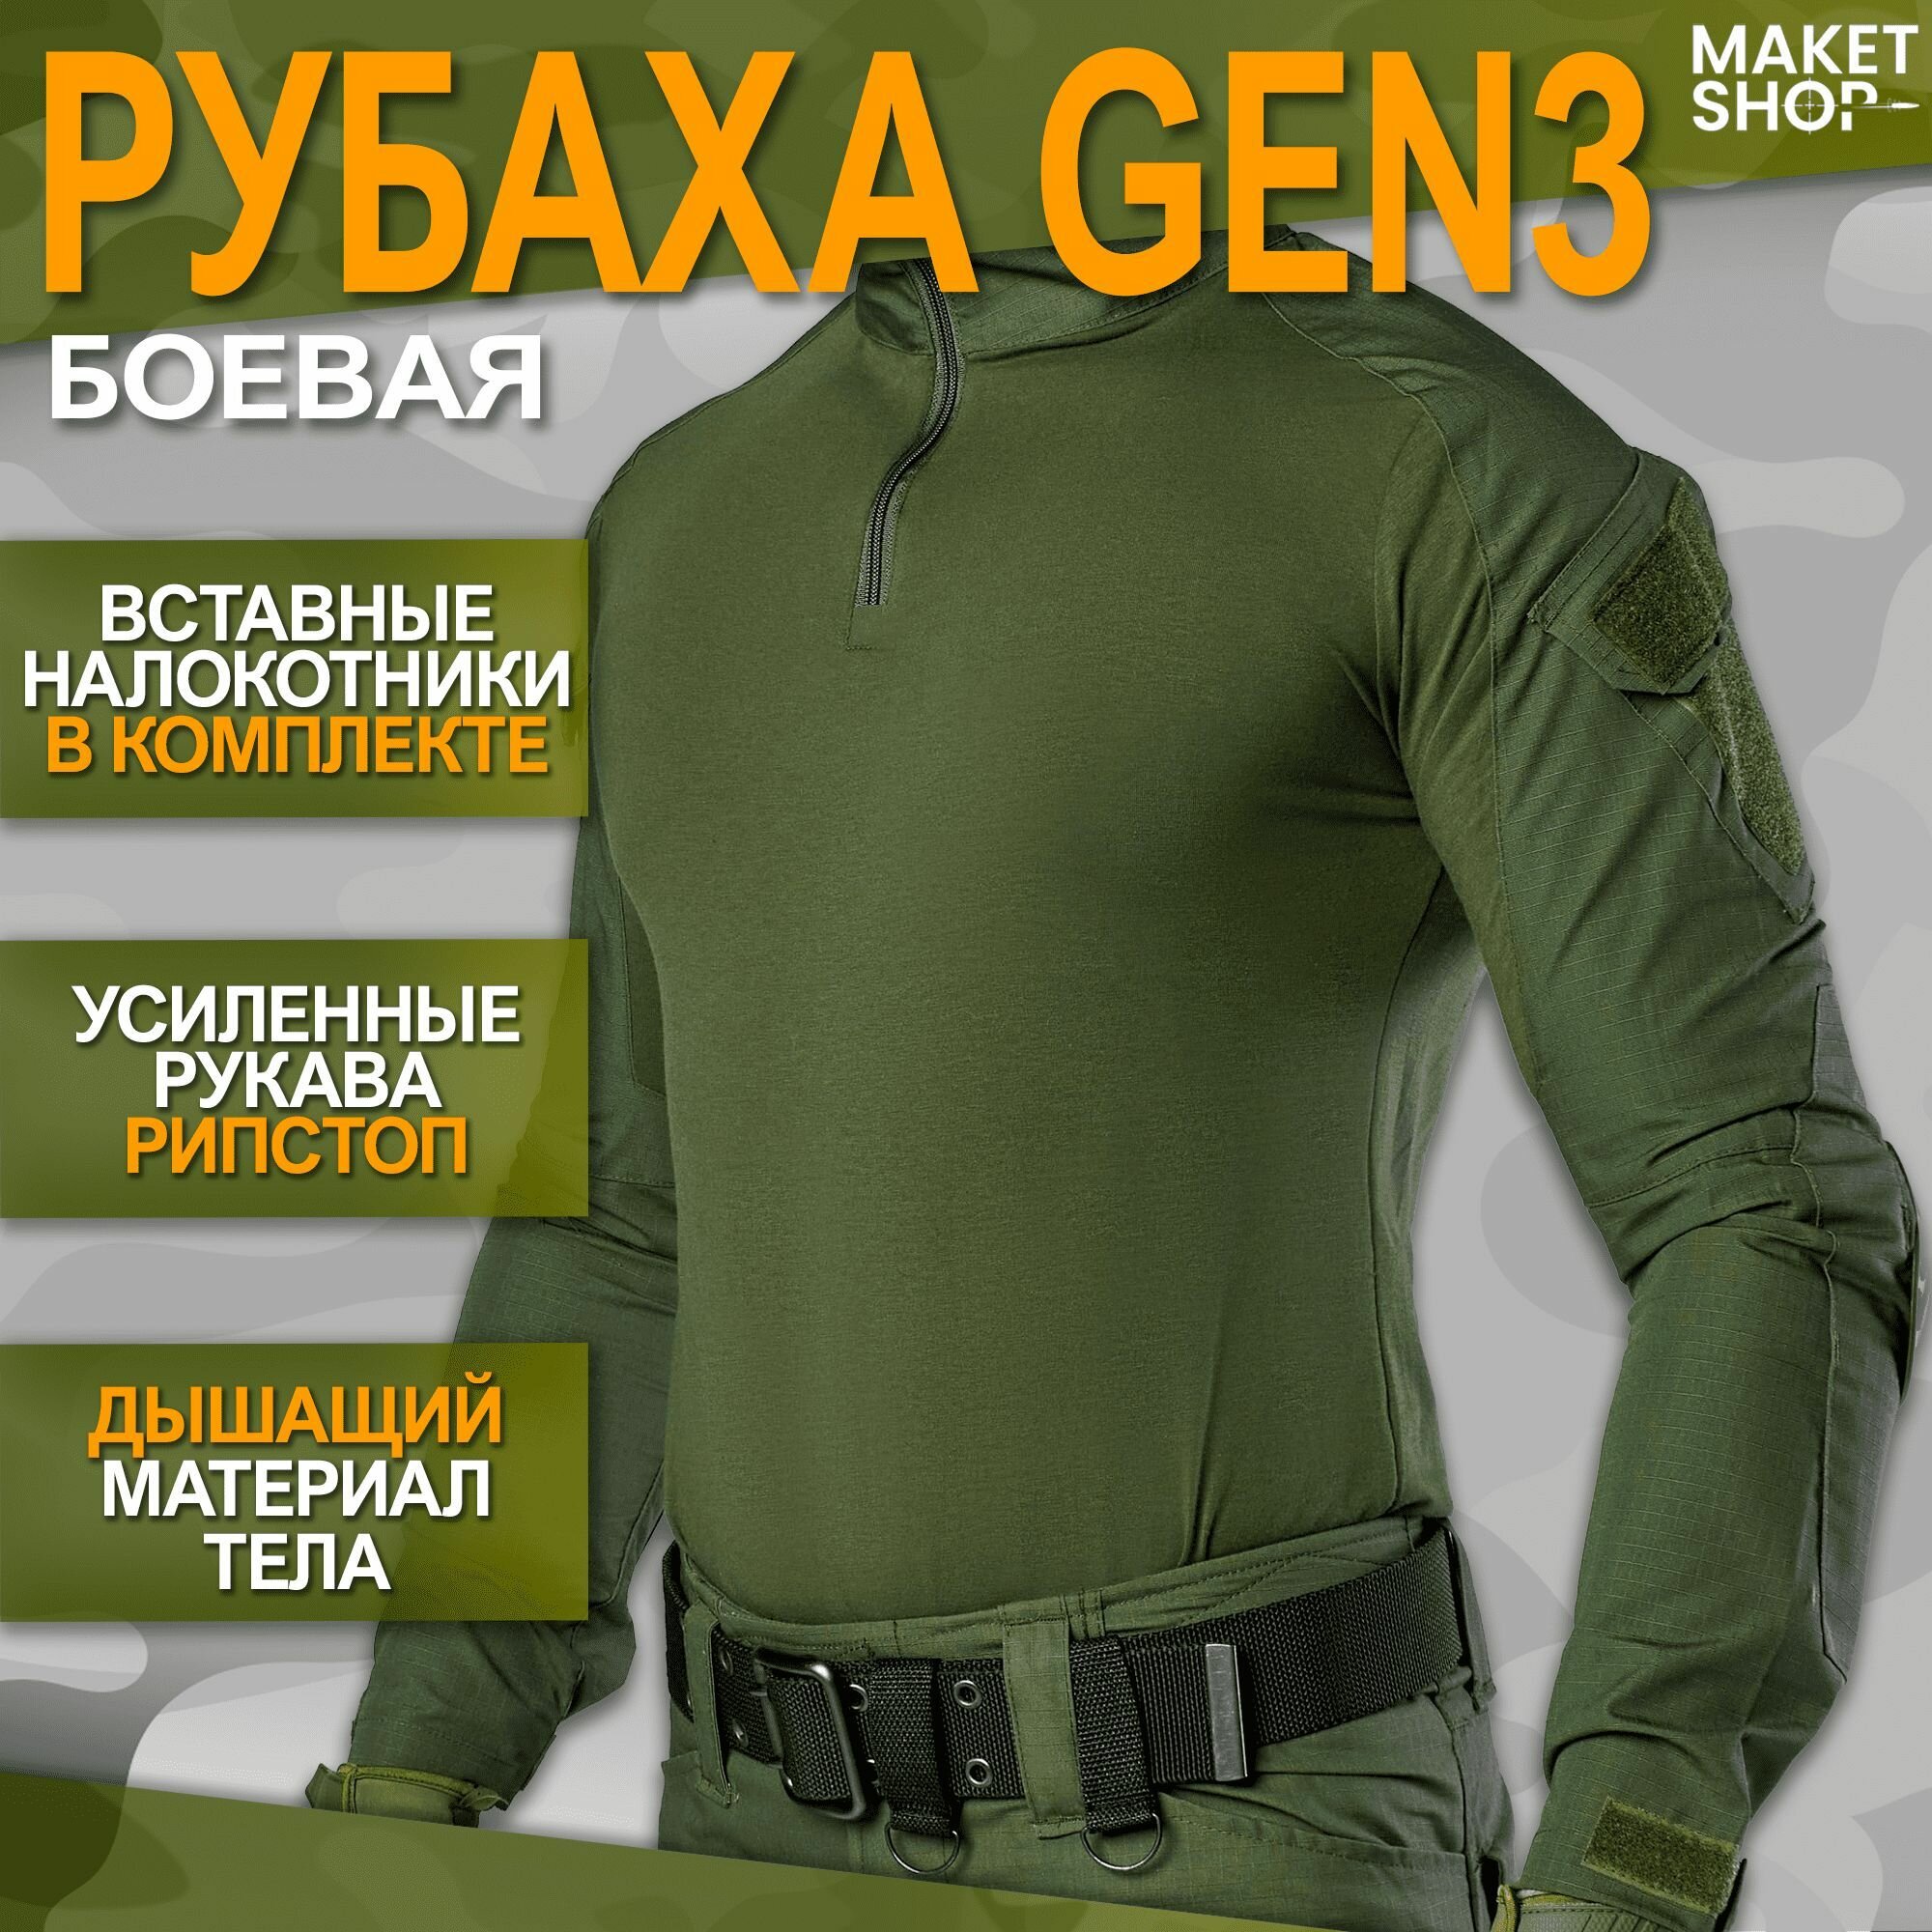 Боевая рубаха с налокотниками Gen 3